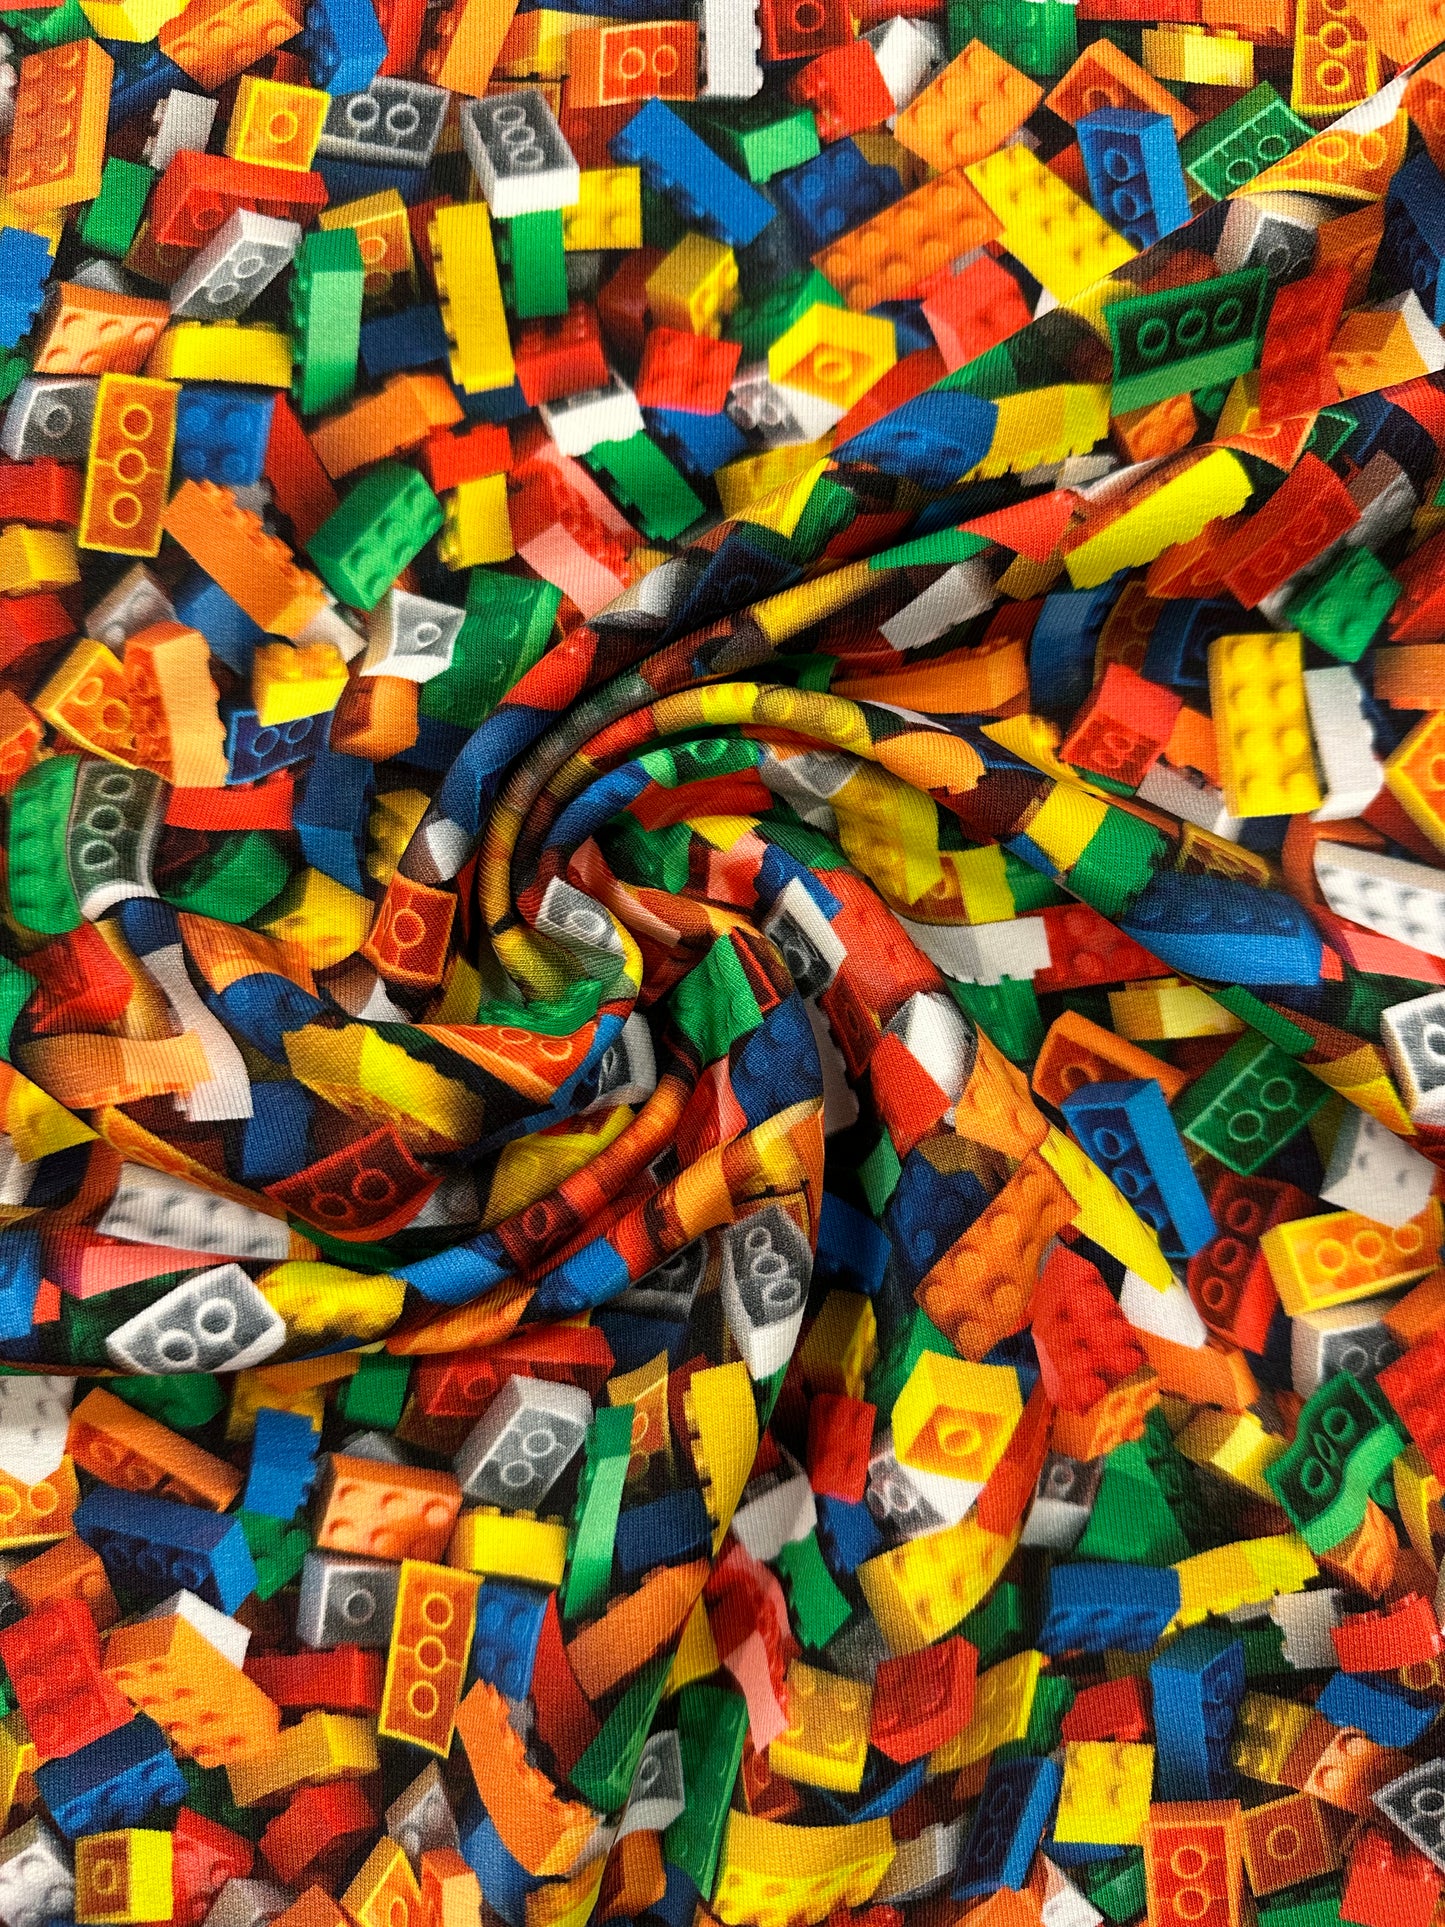 Lego, joustocollege